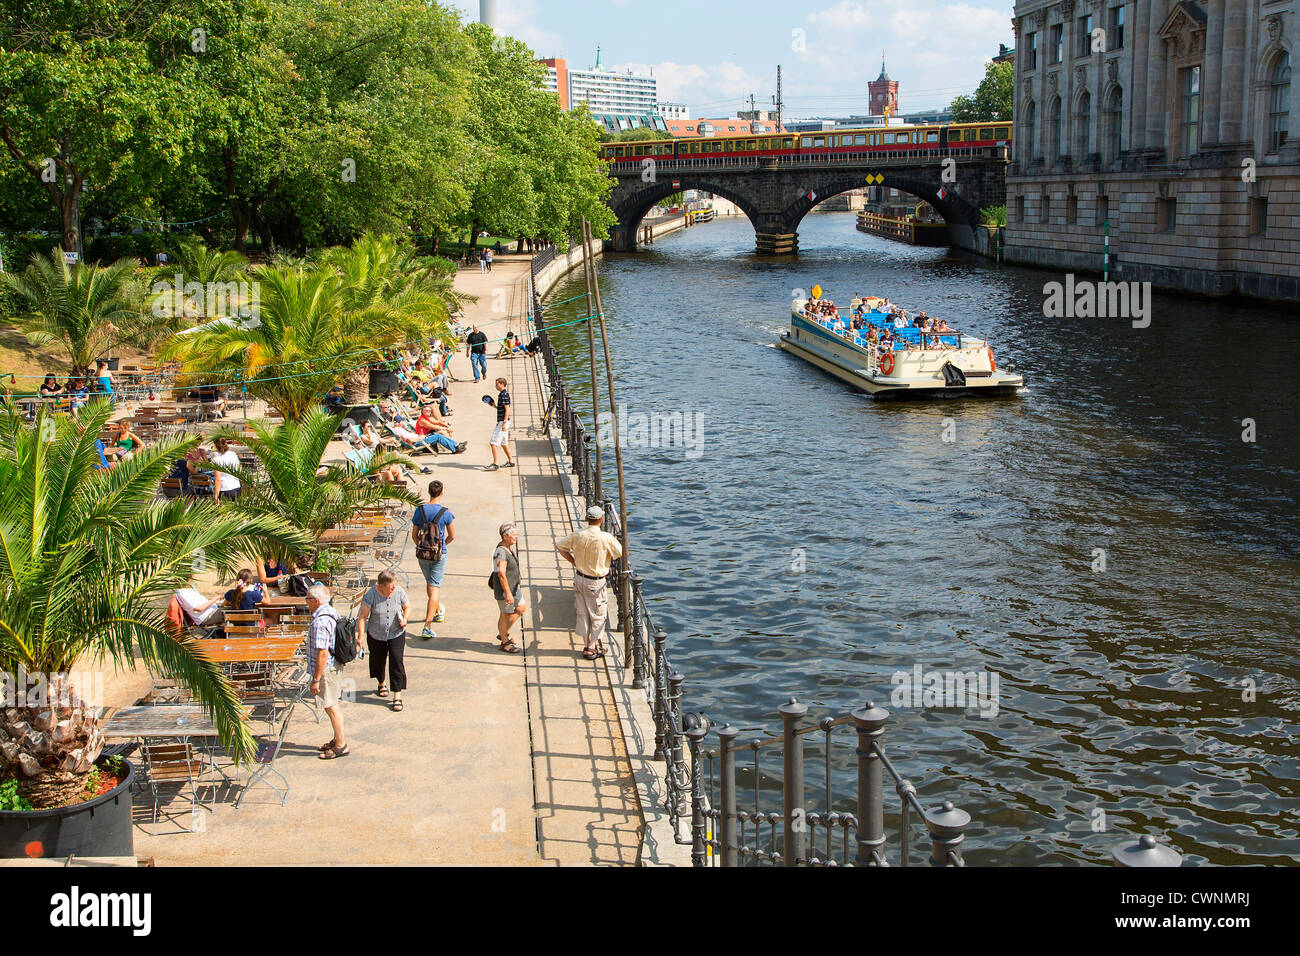 L'Europe, Allemagne, Berlin, Riverside cafe donnant sur la rivière Spree Banque D'Images